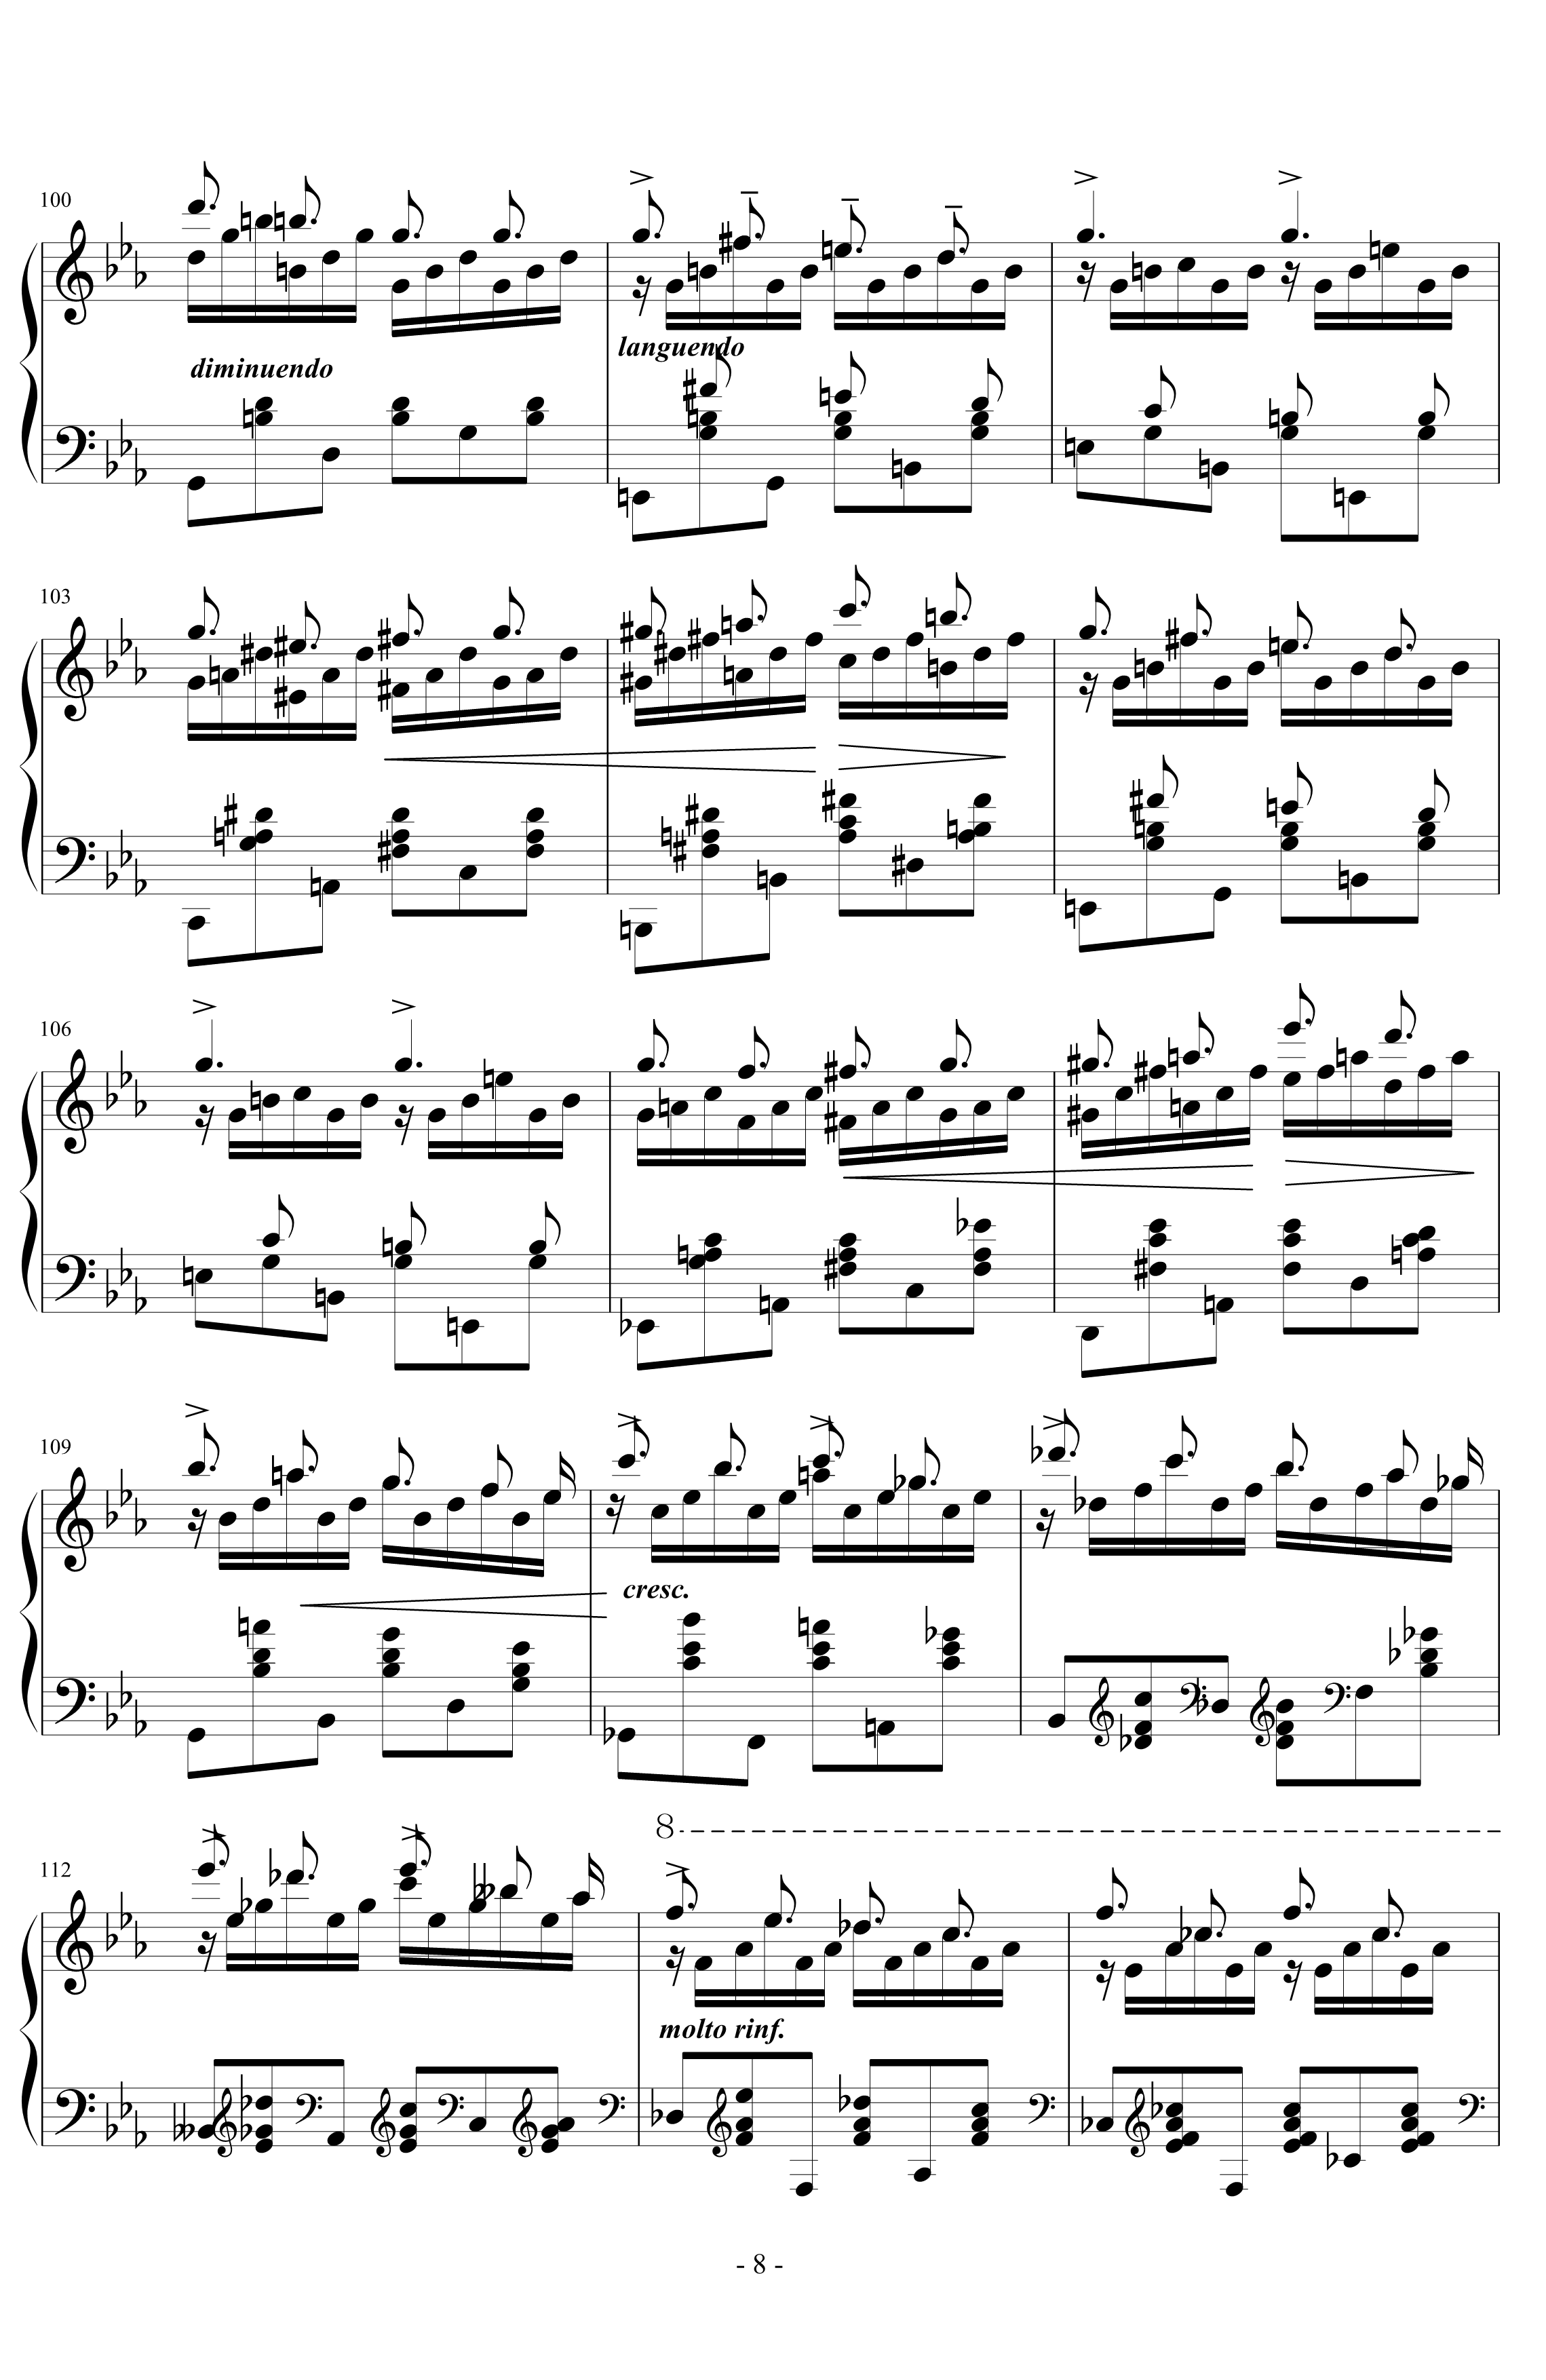 超技练习曲第8号钢琴谱-狩猎-李斯特8